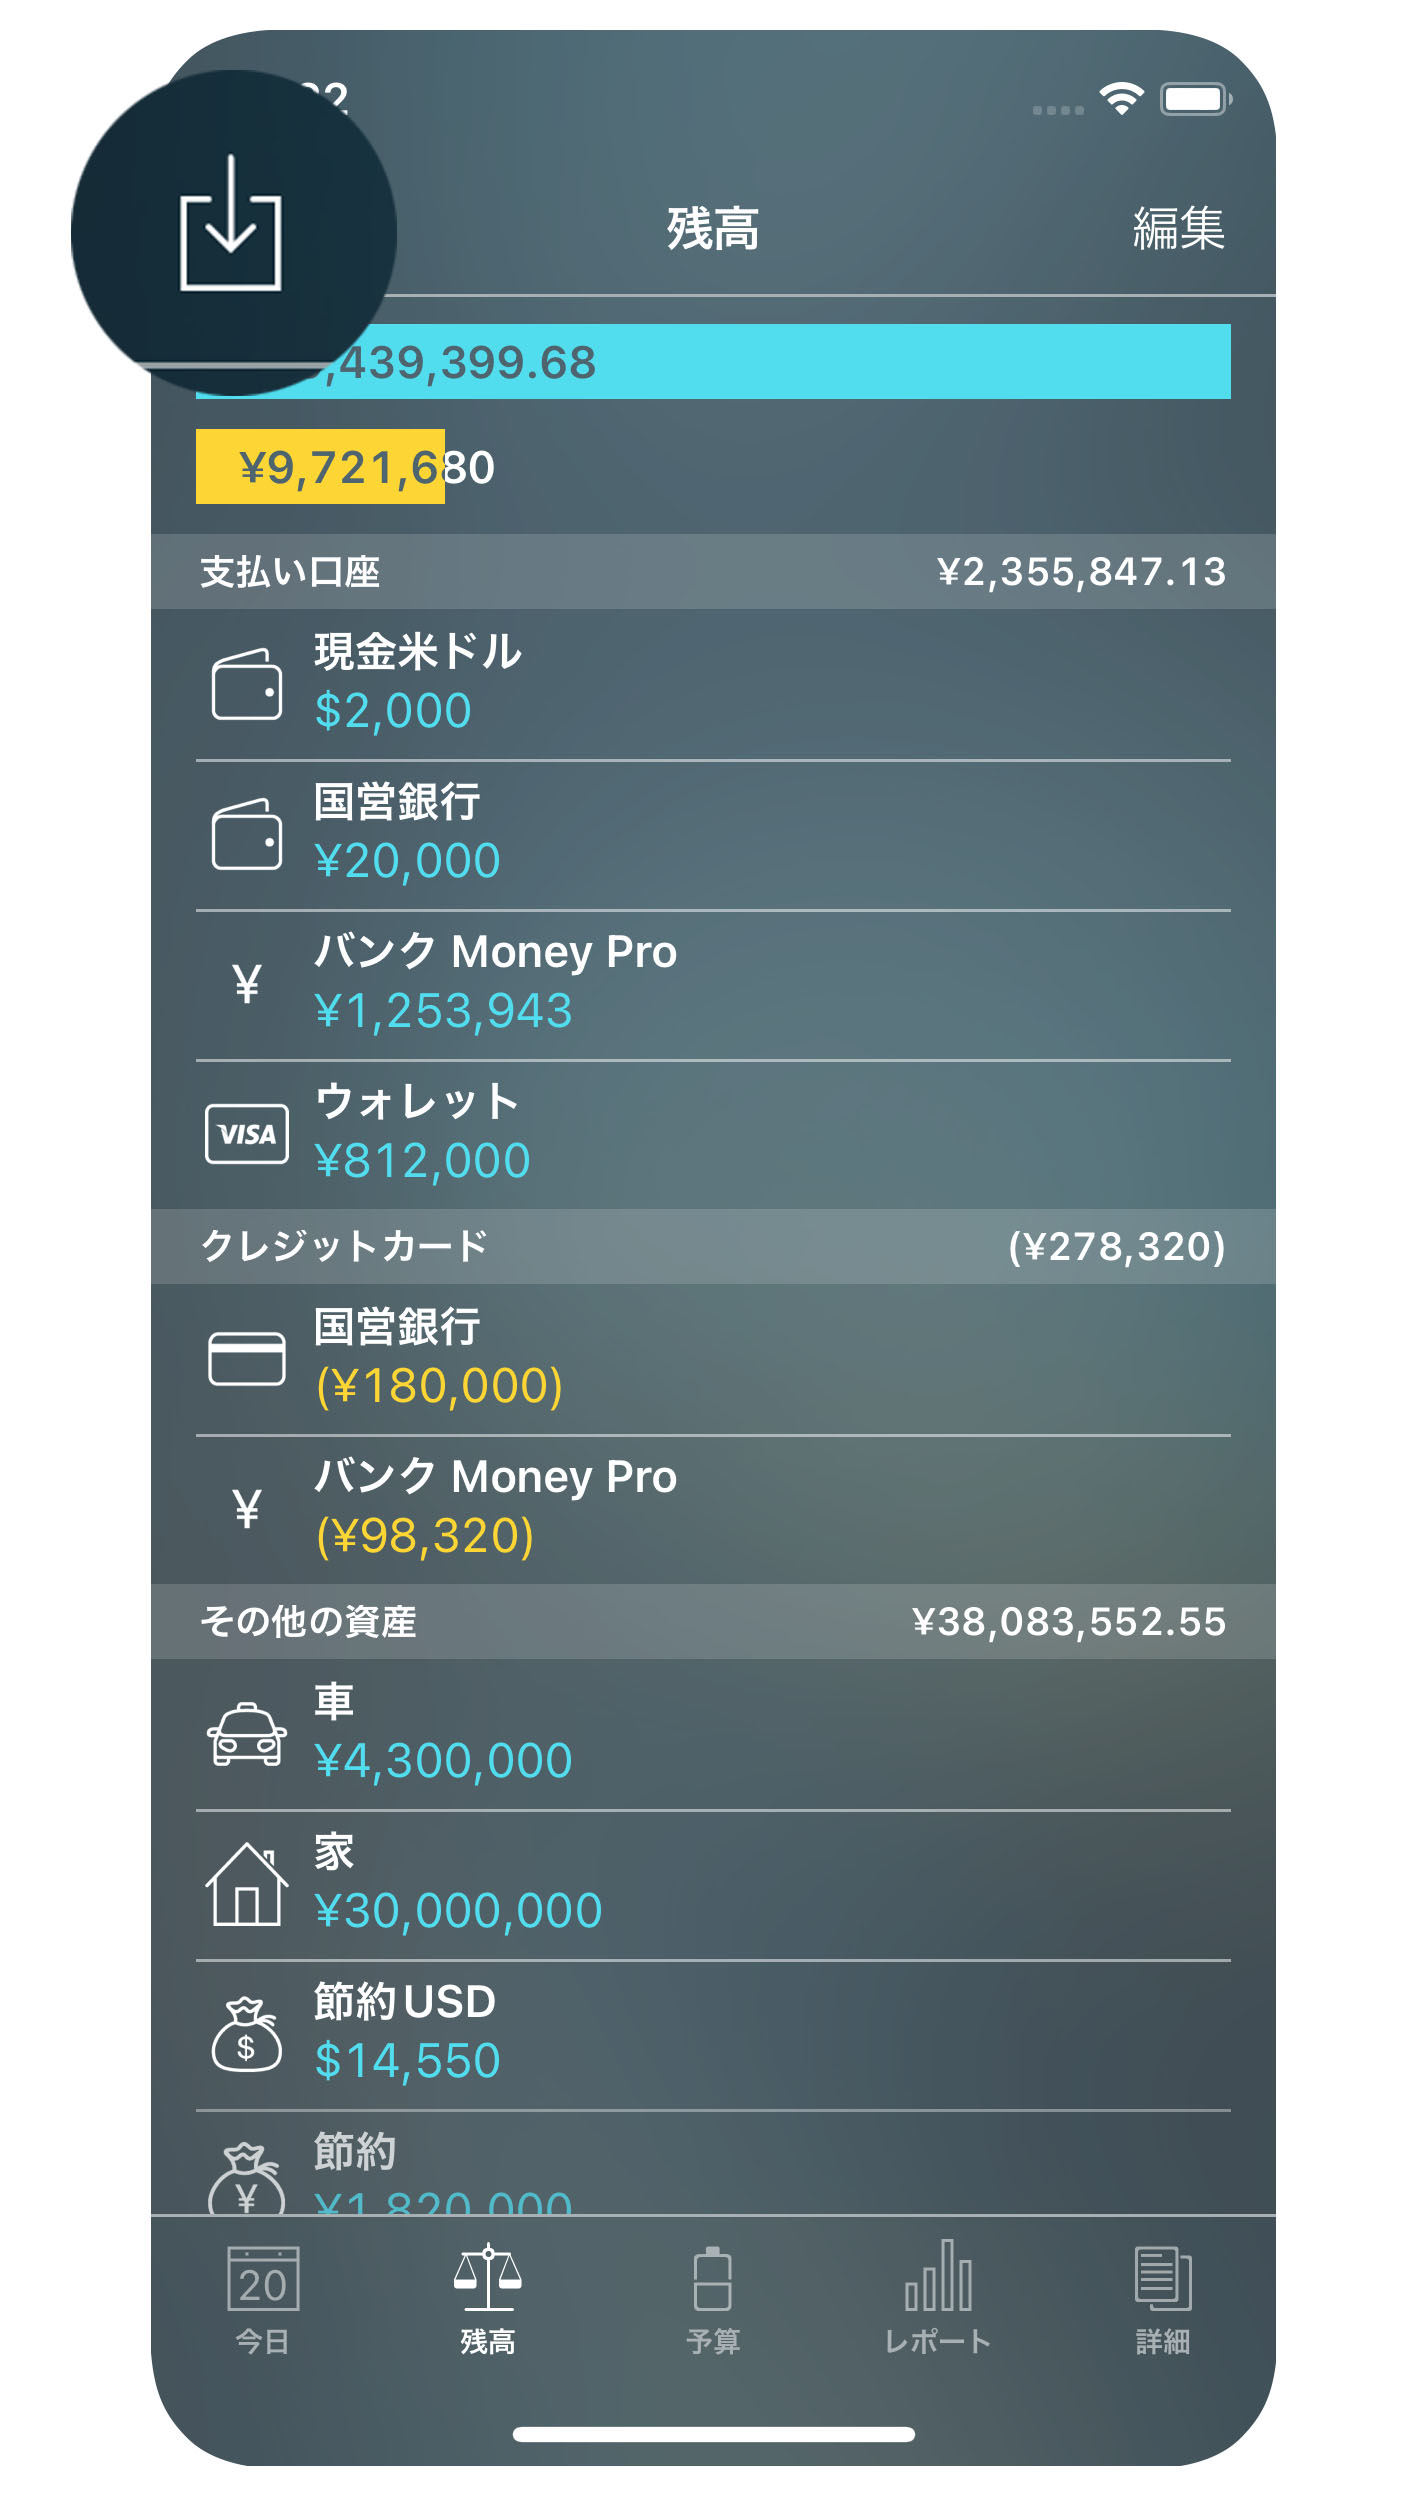 Money Pro - OFX、CSV のインポート - iPhone